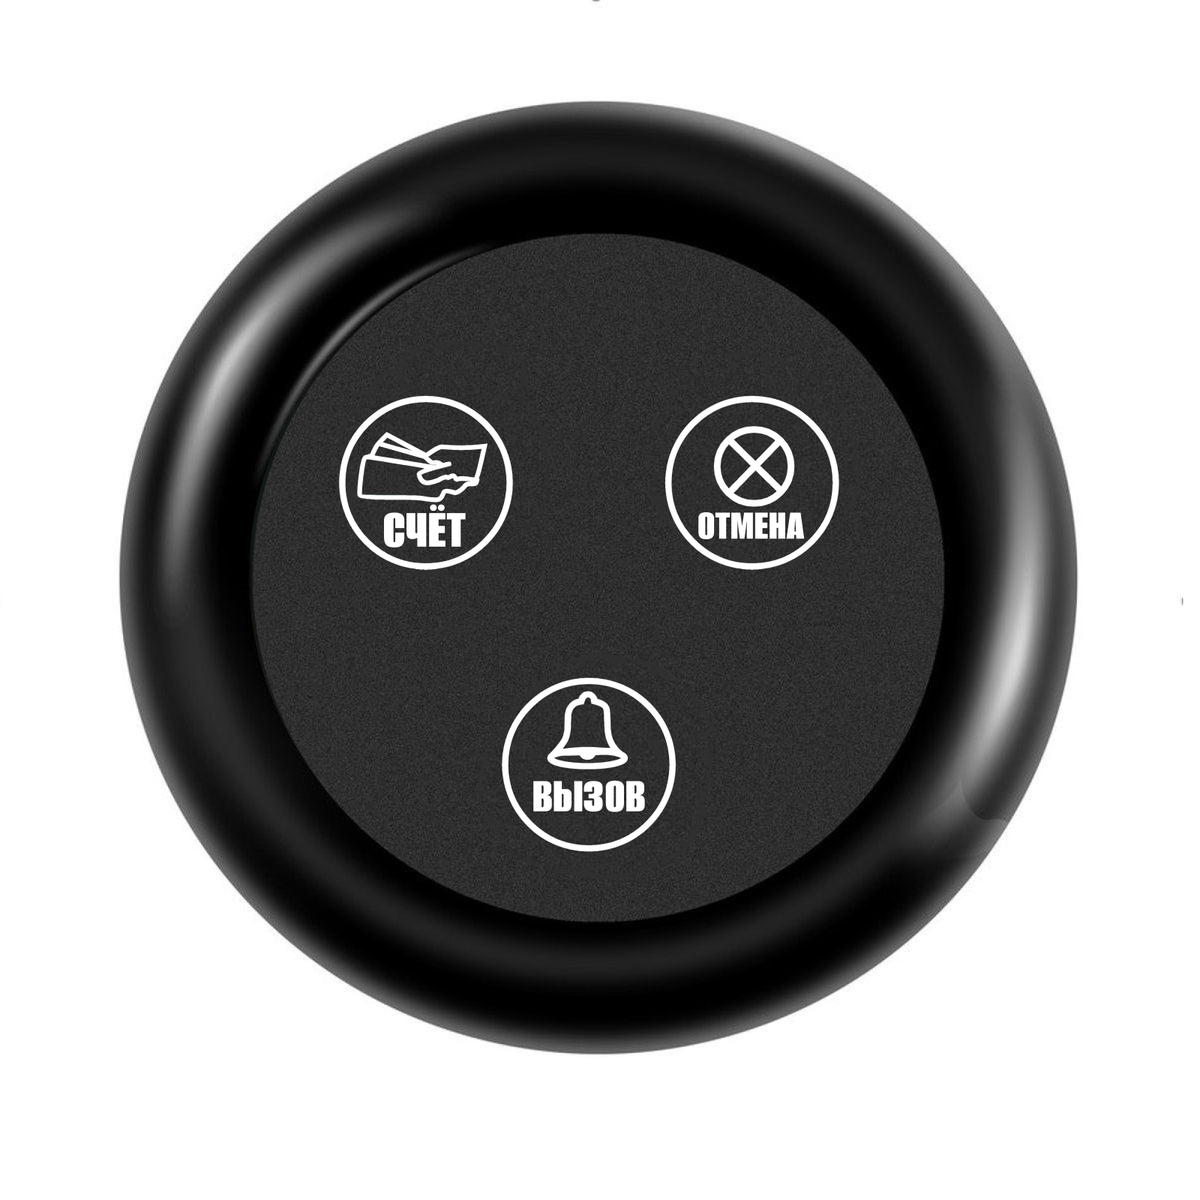 Кнопка вызова Kromix K22008 (вызов, отмена, счёт) IP65 автомобильная мультимедийная кнопка ручка крышка рамка накладка замена для bmw f10 f20 f30 1 3 5 серии только для контроллера nbt для кнопки idrive